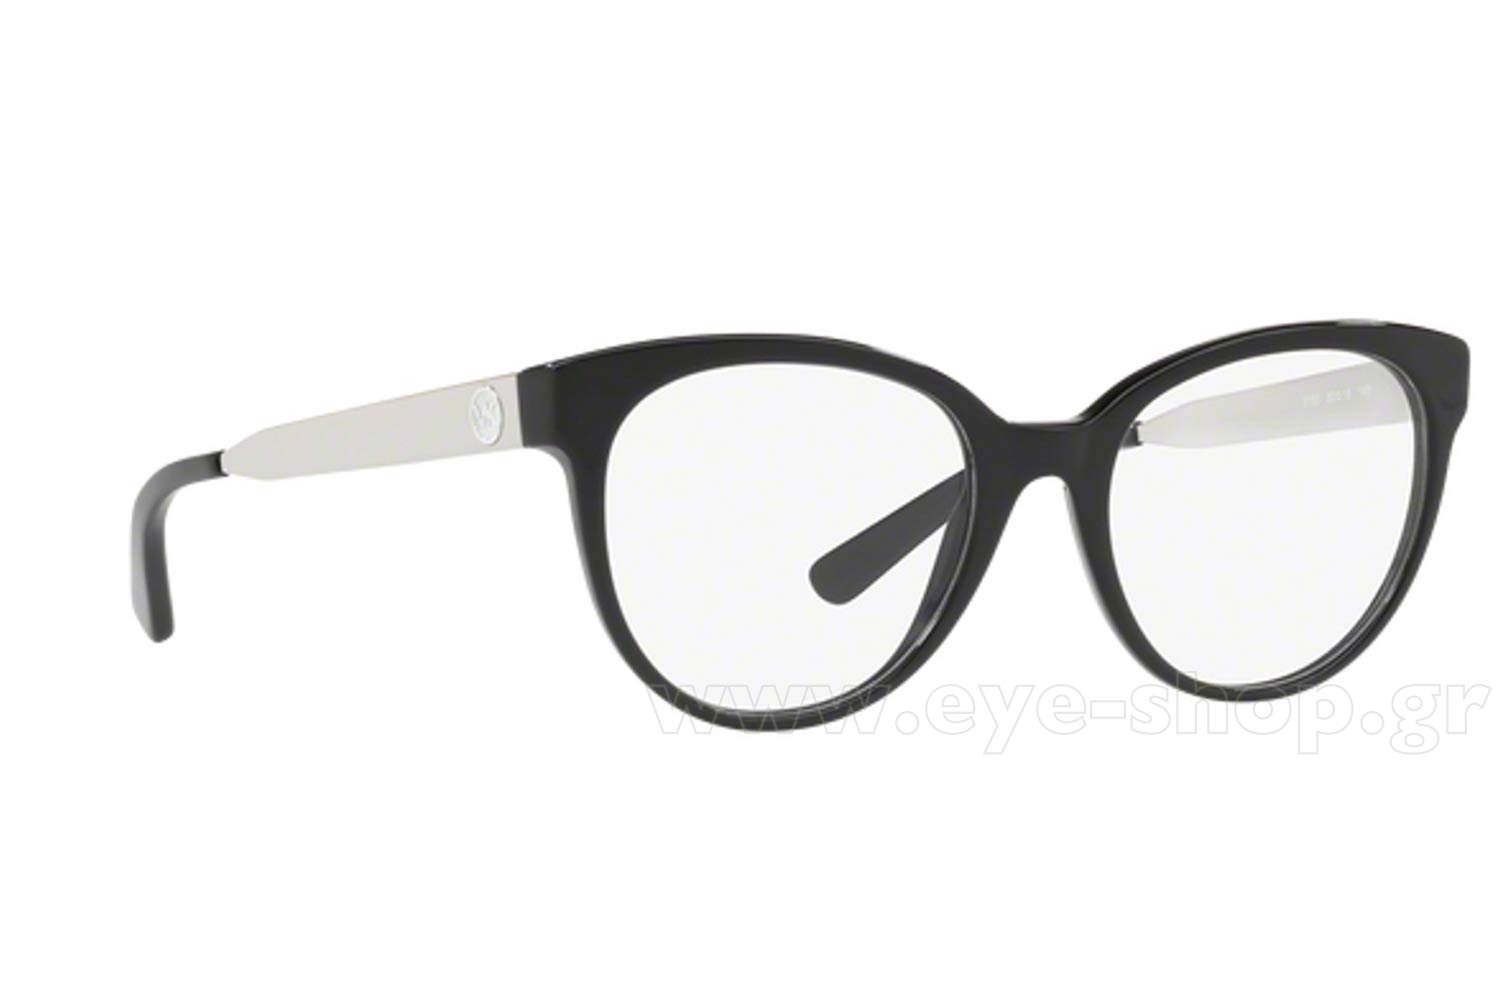 michael kors optical glasses